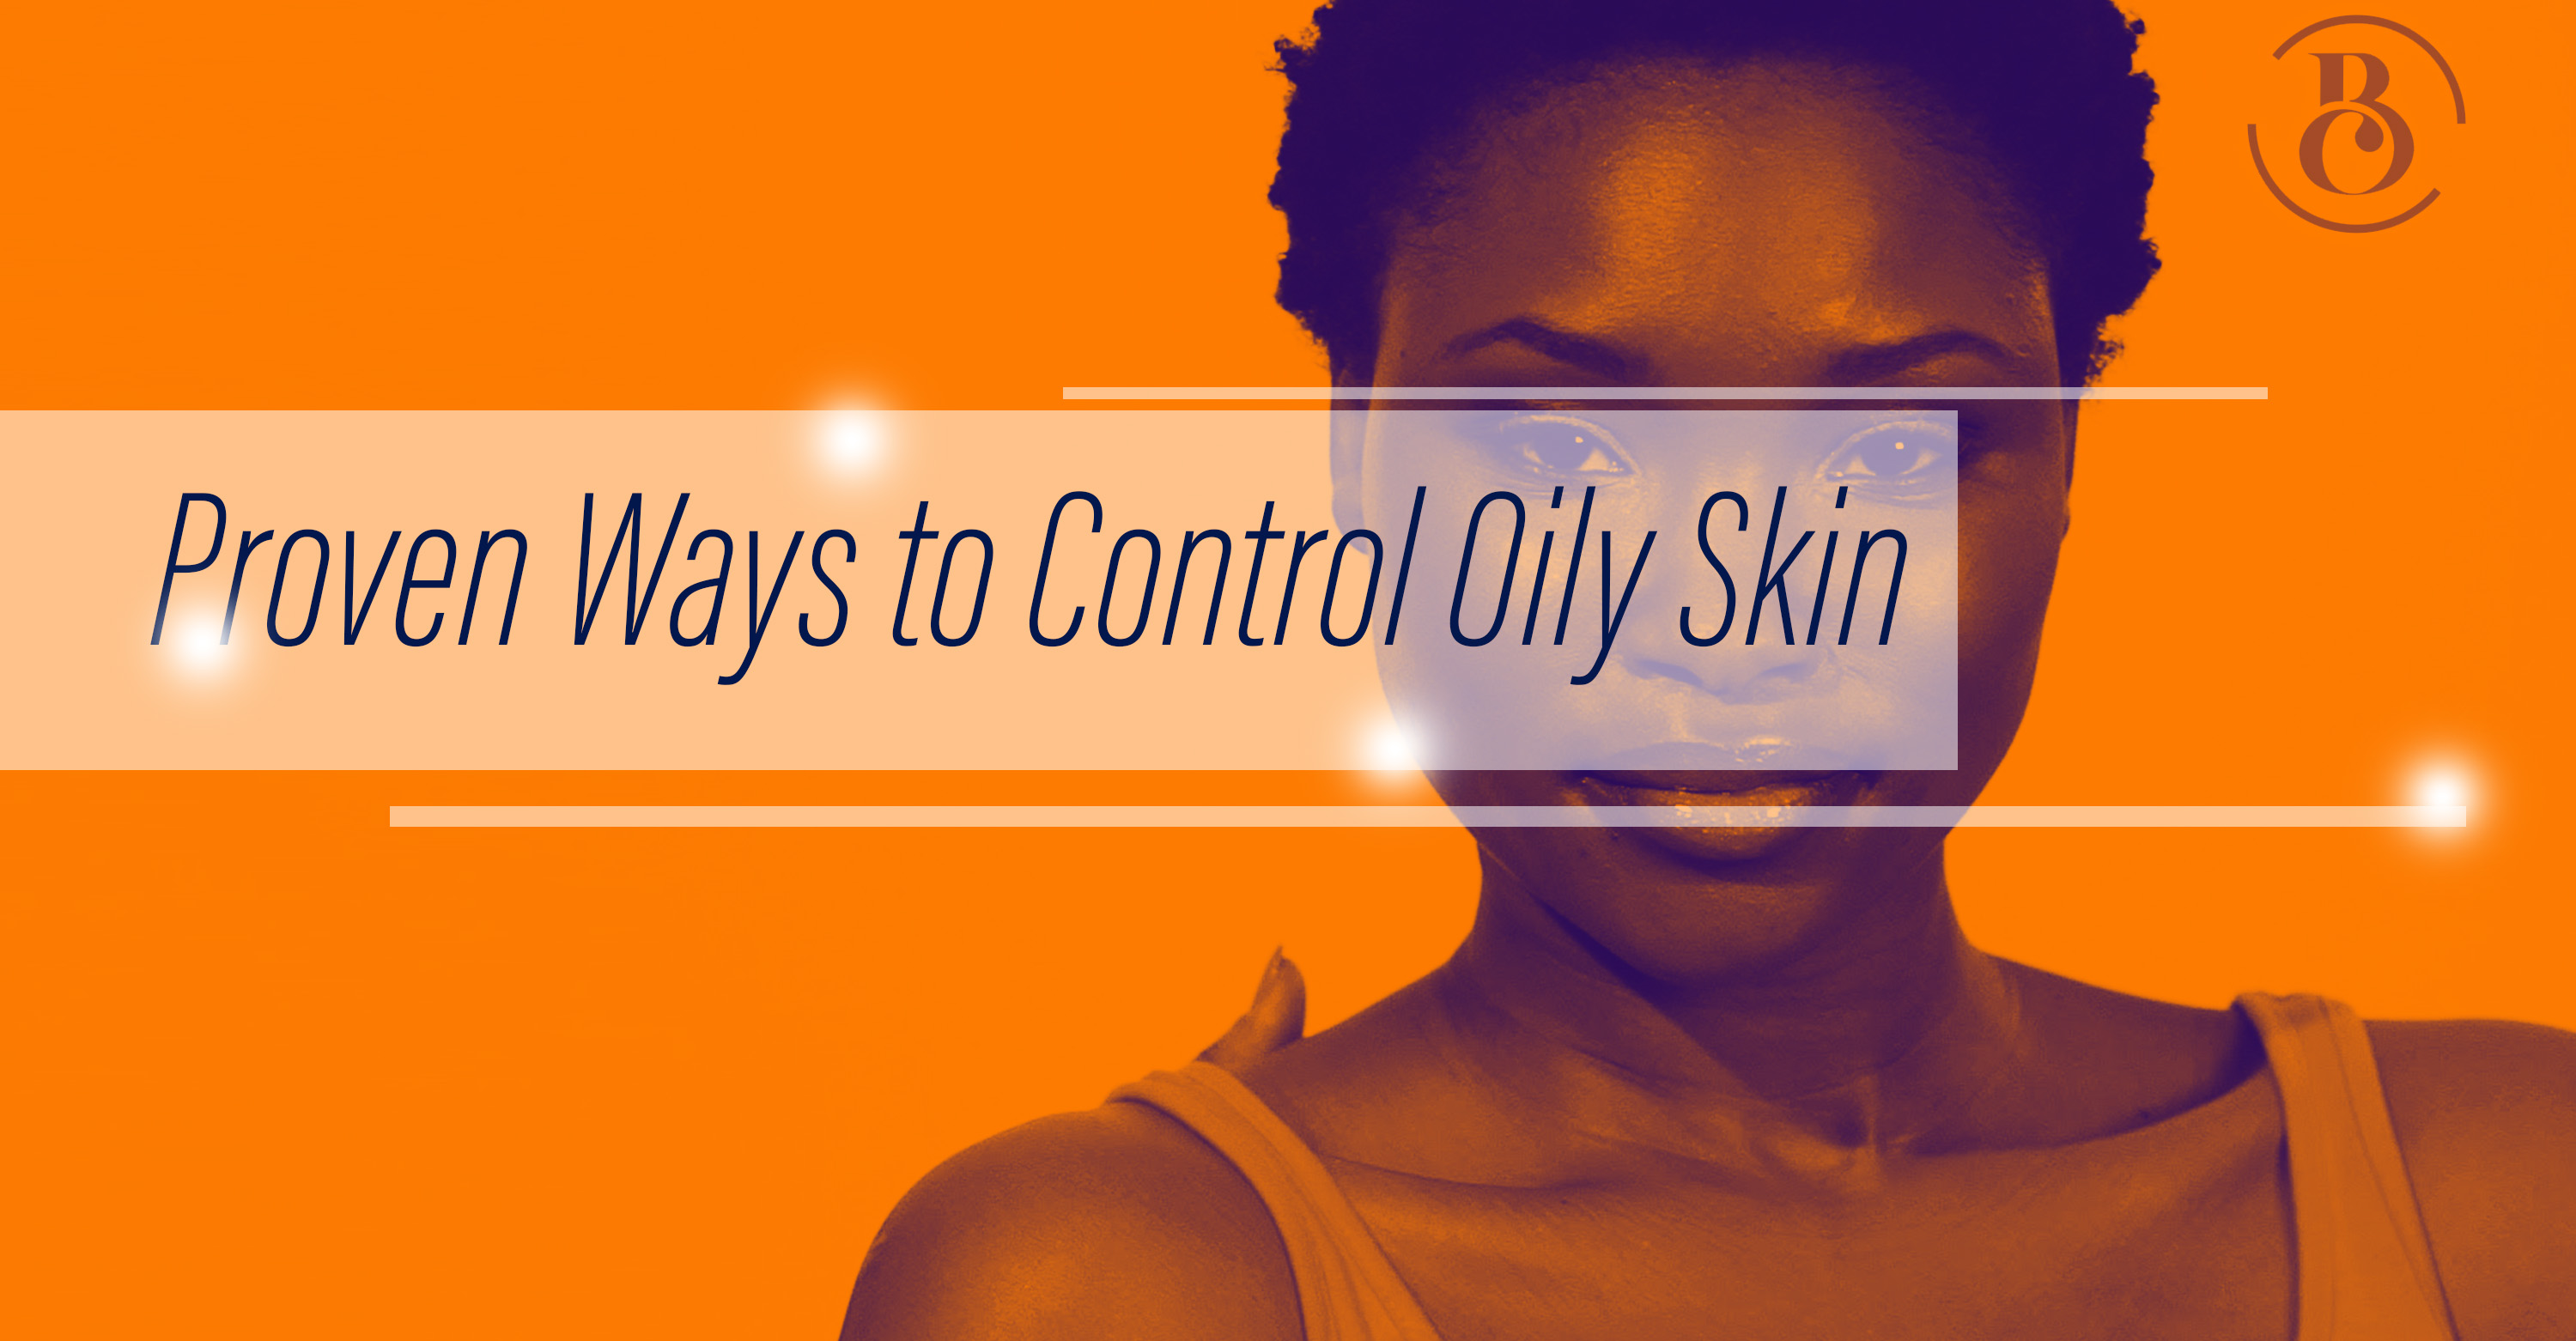 9 Proven Ways to Control Oily Skin